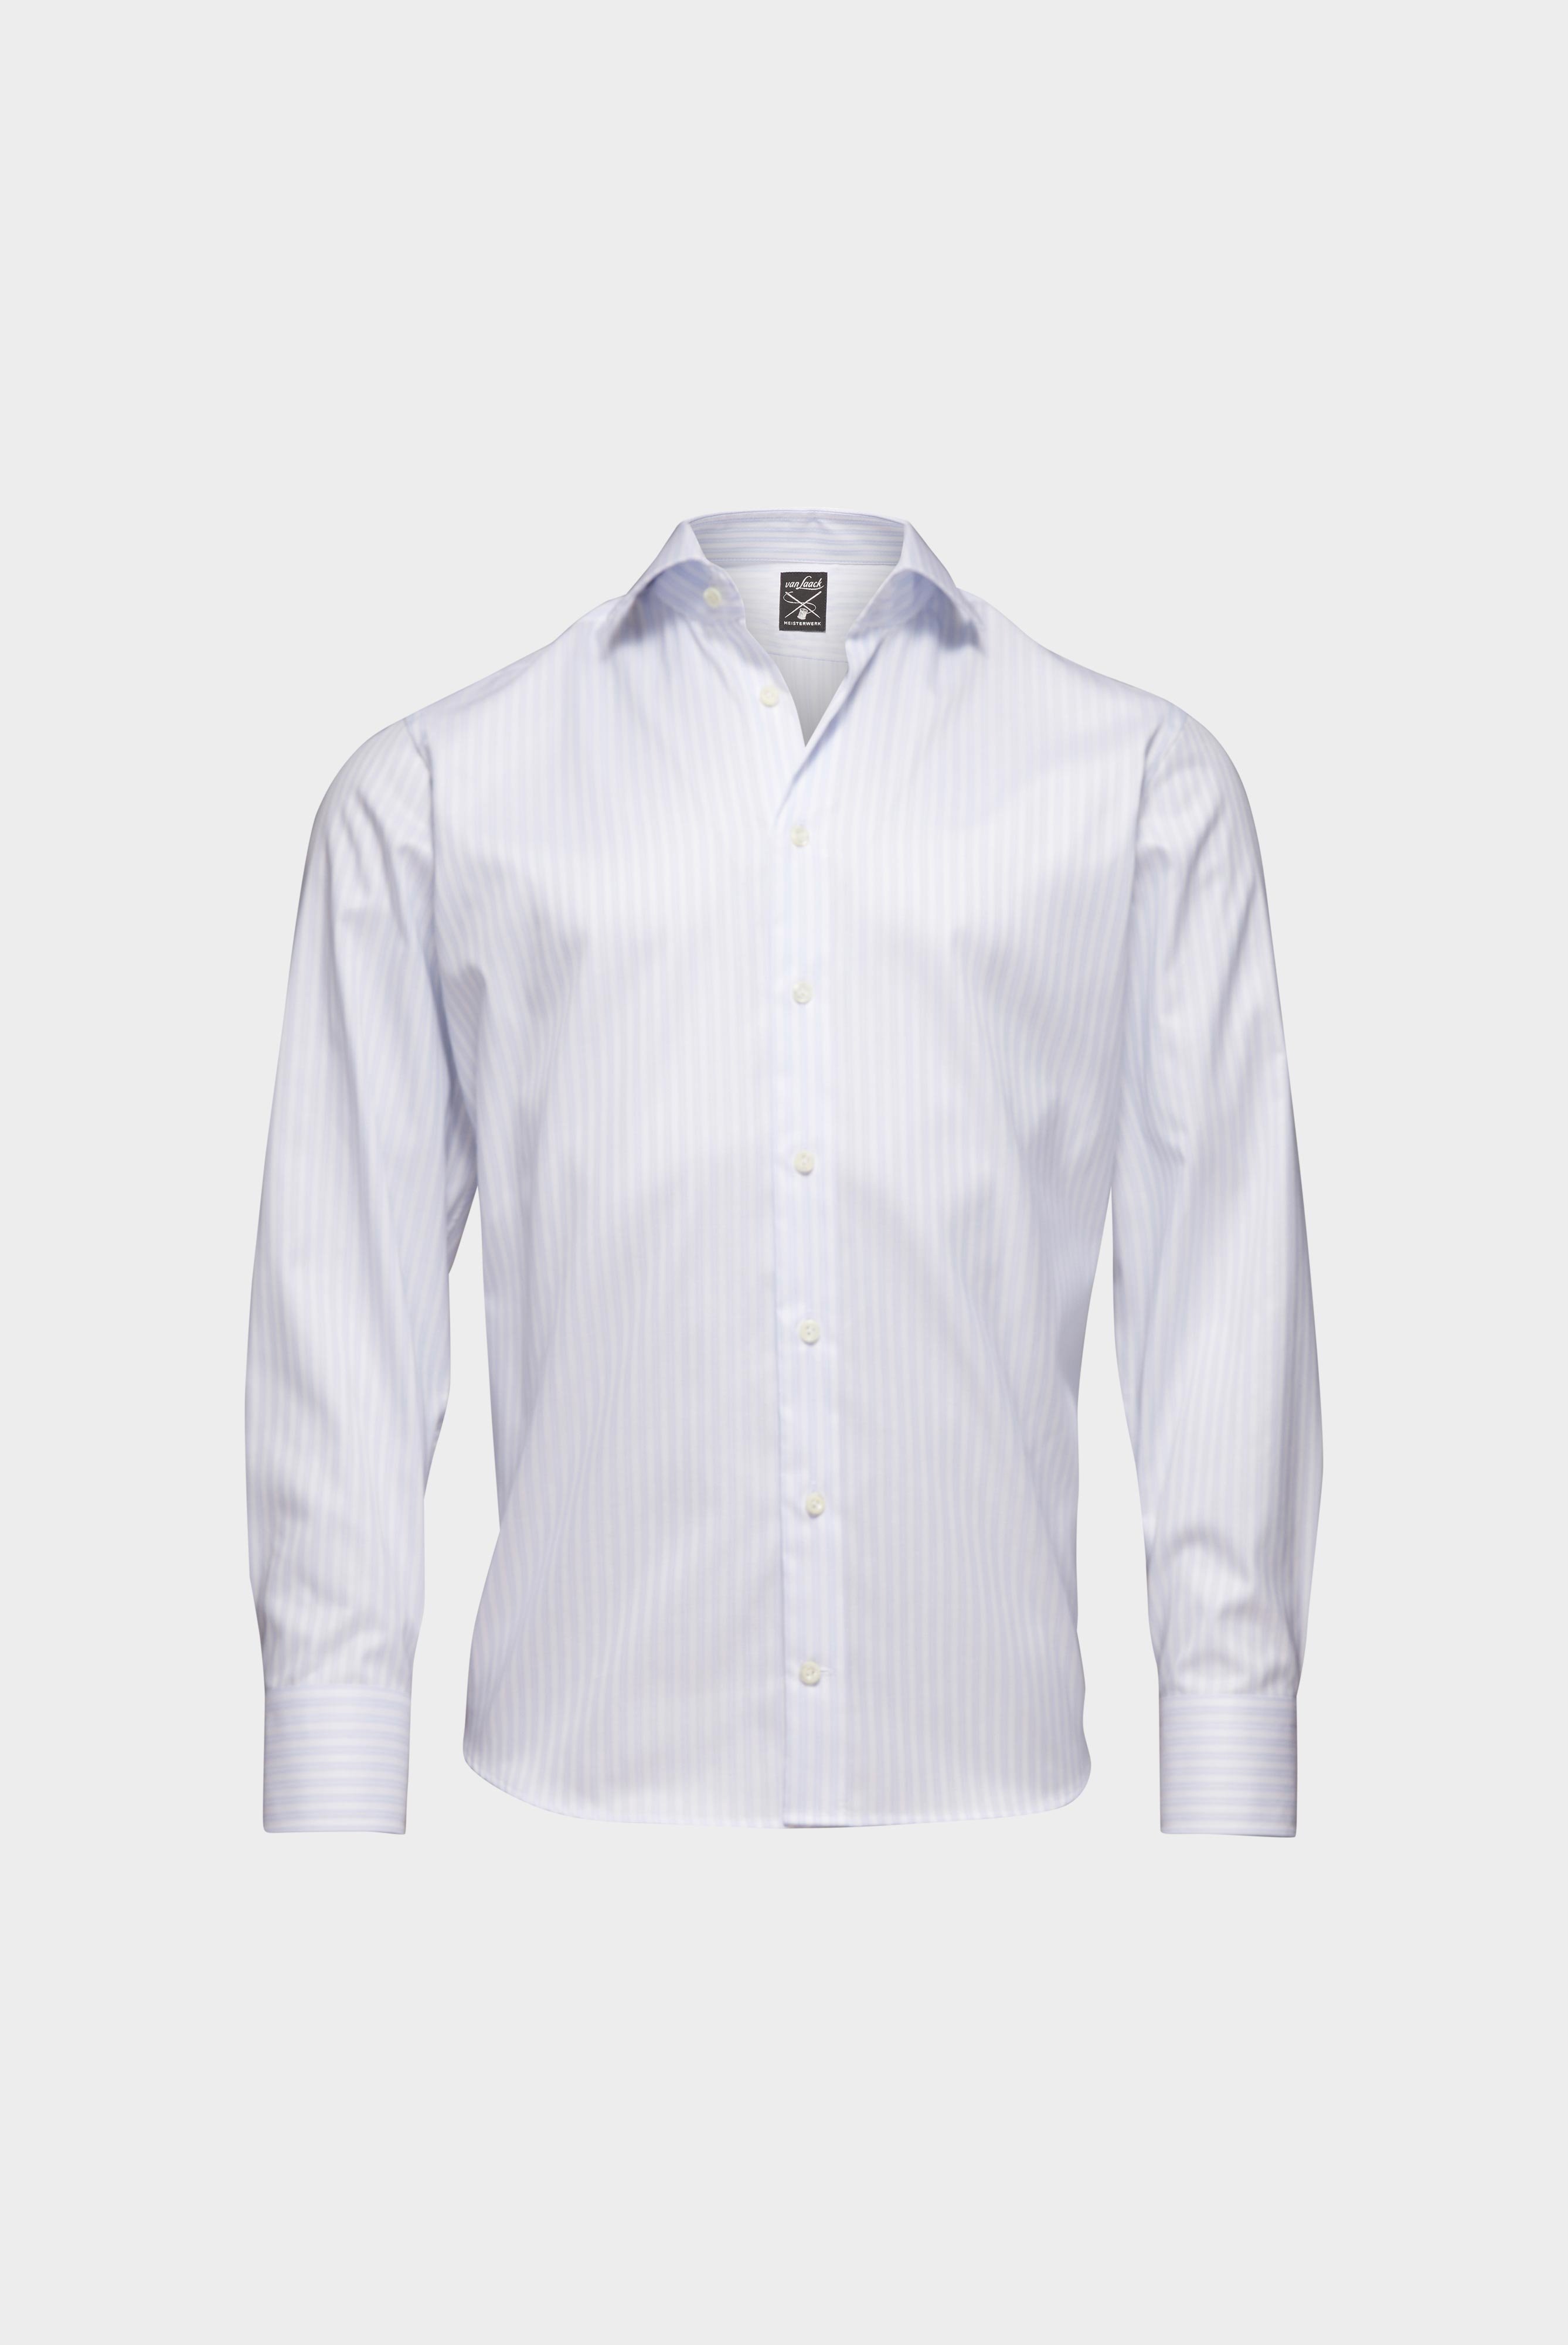 Easy Iron Shirts+Striped Wrinkle Free Shirt Slim Fit+20.2019.BQ.161106.007.38